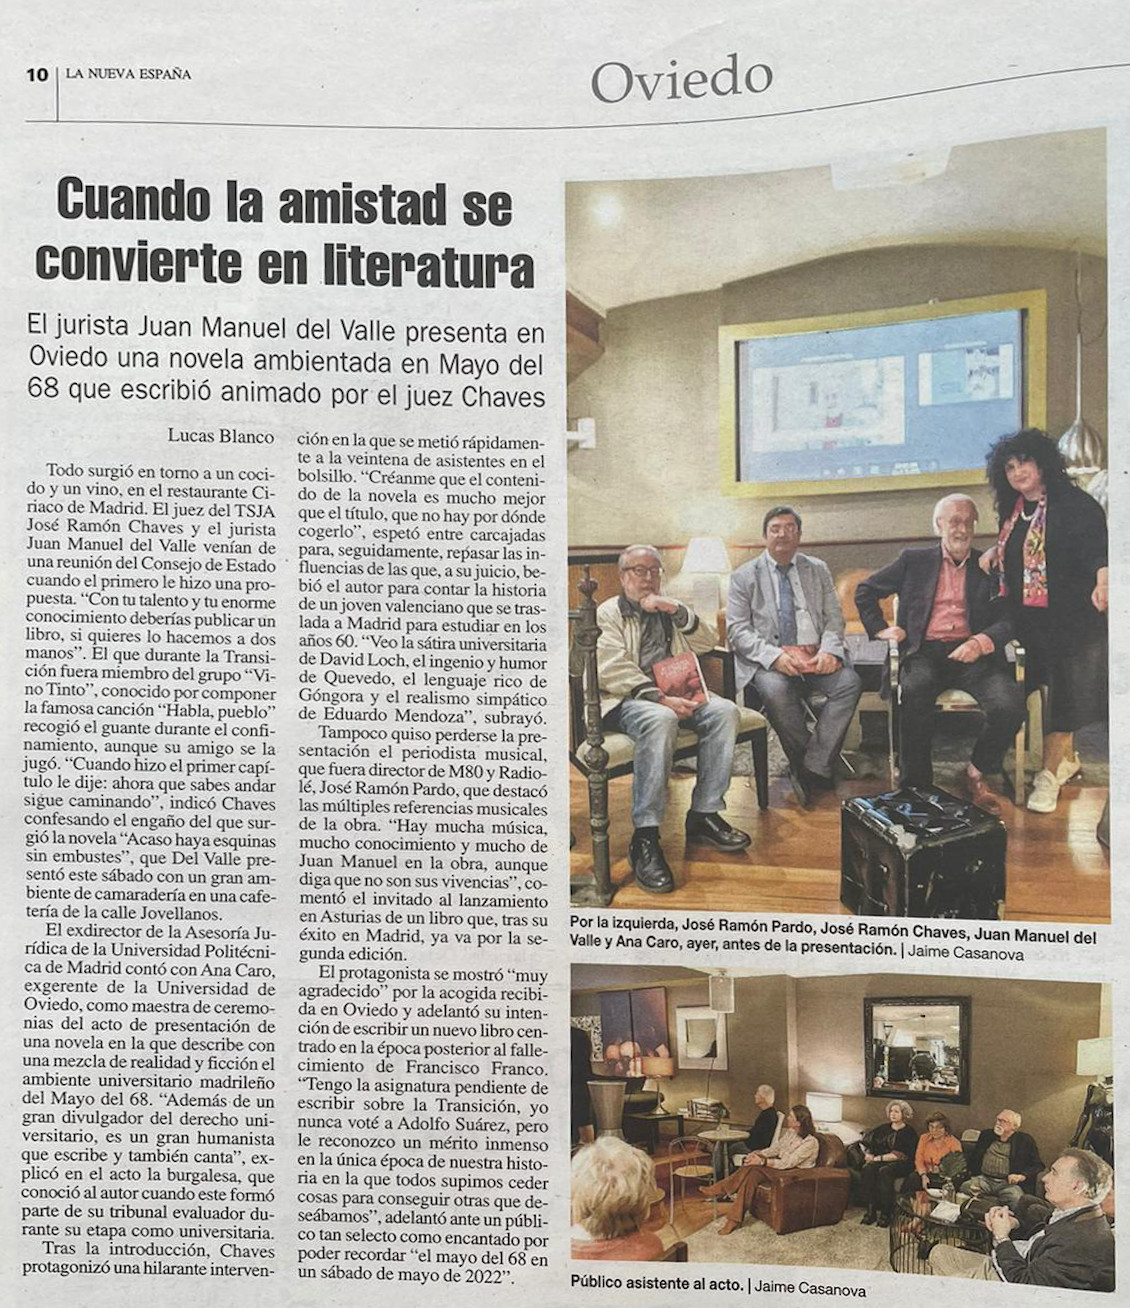 La Nueva España - Periódico - Presentación de la novela - Oviedo